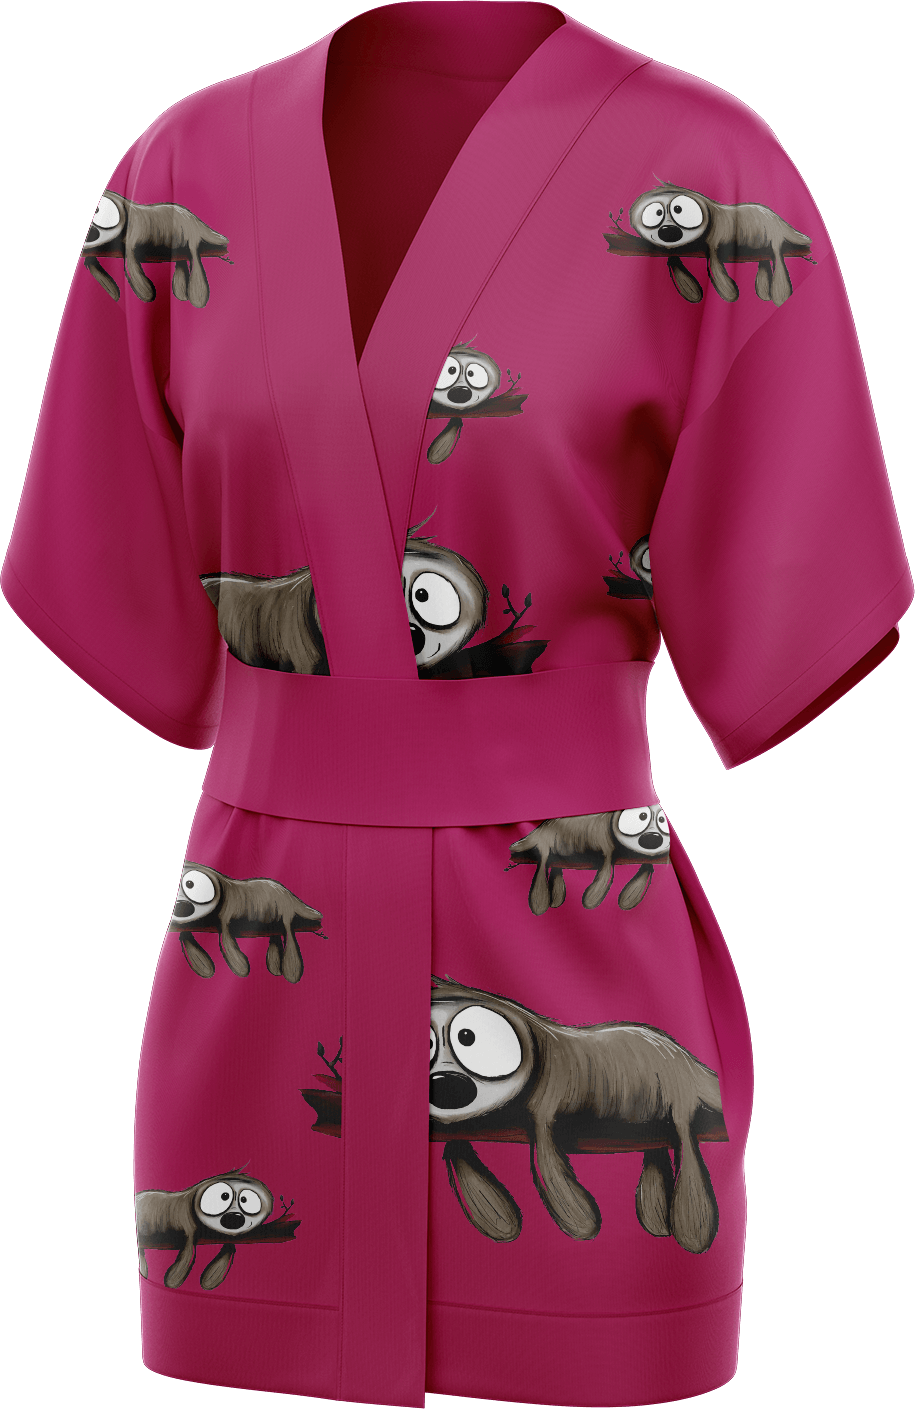 Snoozy Sloth Kimono - fungear.com.au